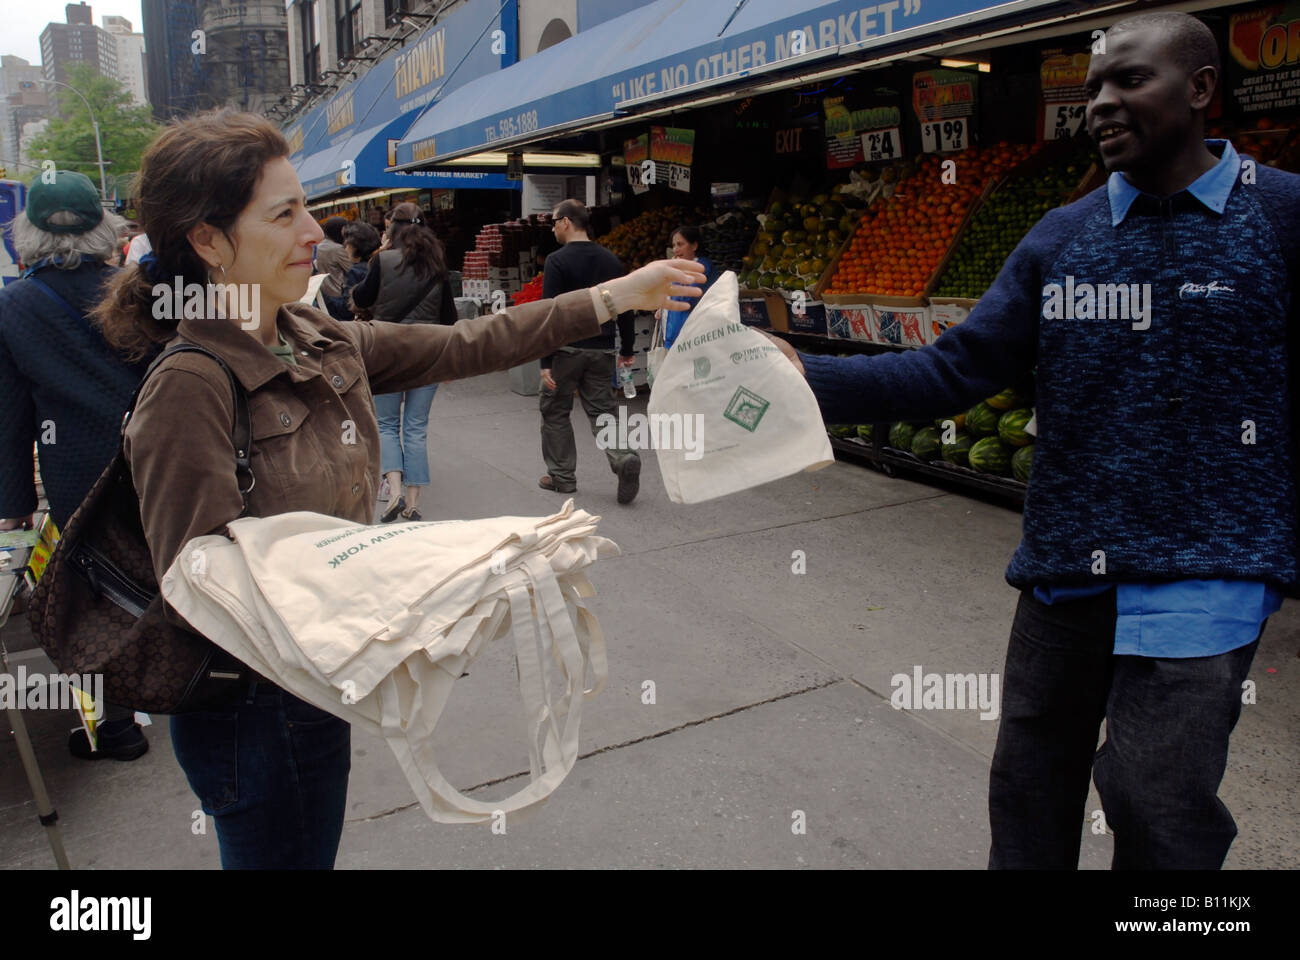 Voluntarios en frente de Fairway supermercado en Nueva York regalar bolsas de tela reutilizables para compradores para sustituir las bolsas de plástico Foto de stock